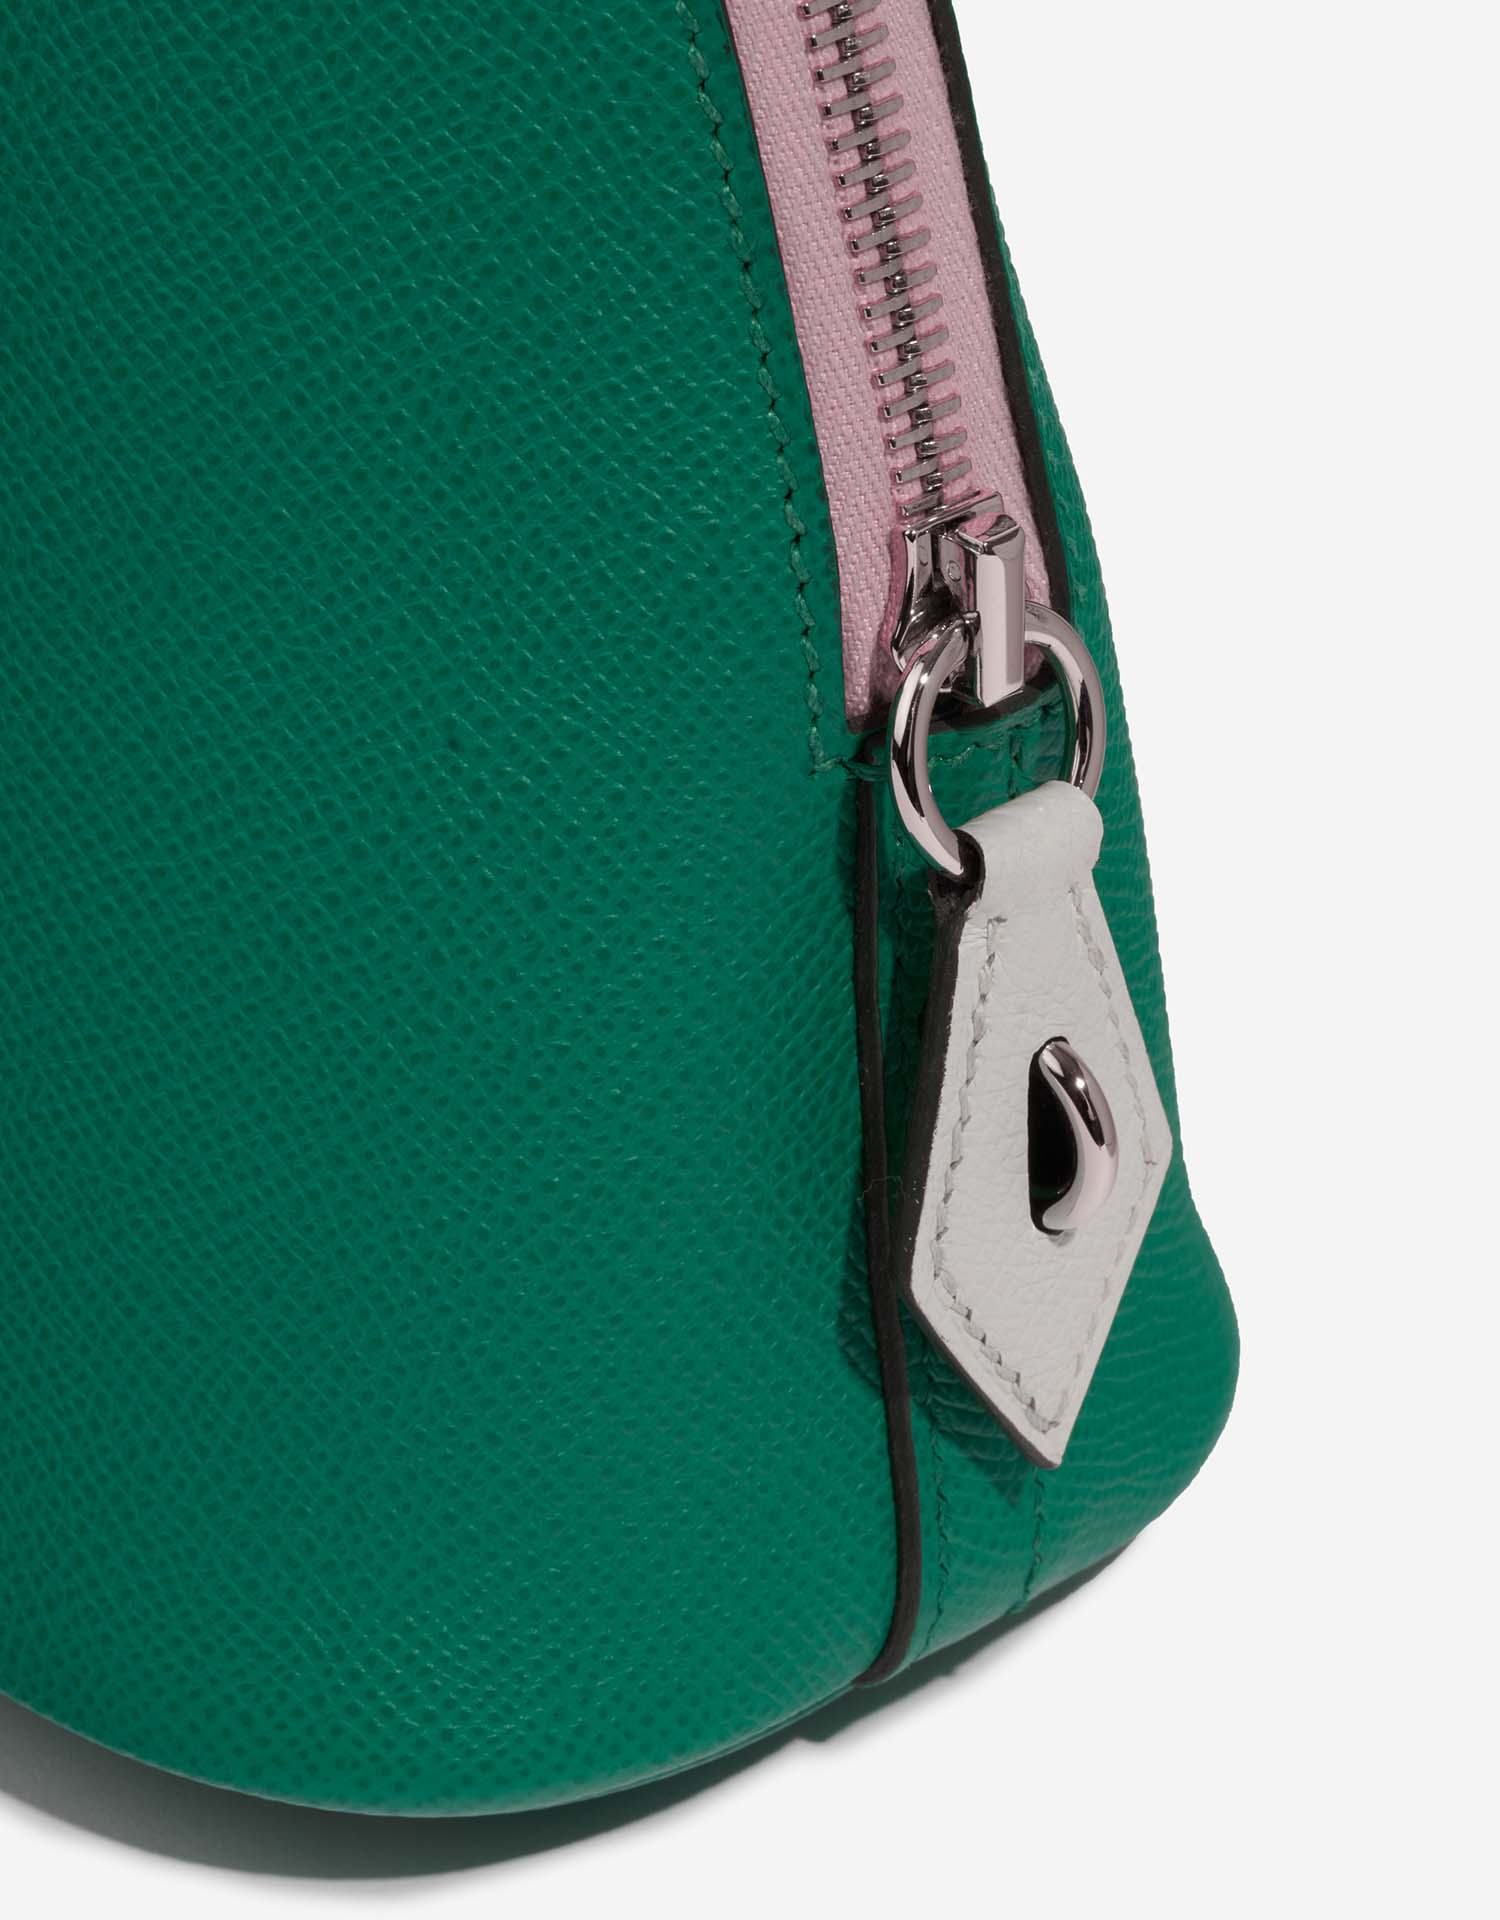 Hermès Bolide 27 VertJade-MauveSylvestre-Nata Système de fermeture | Vendez votre sac de créateur sur Saclab.com